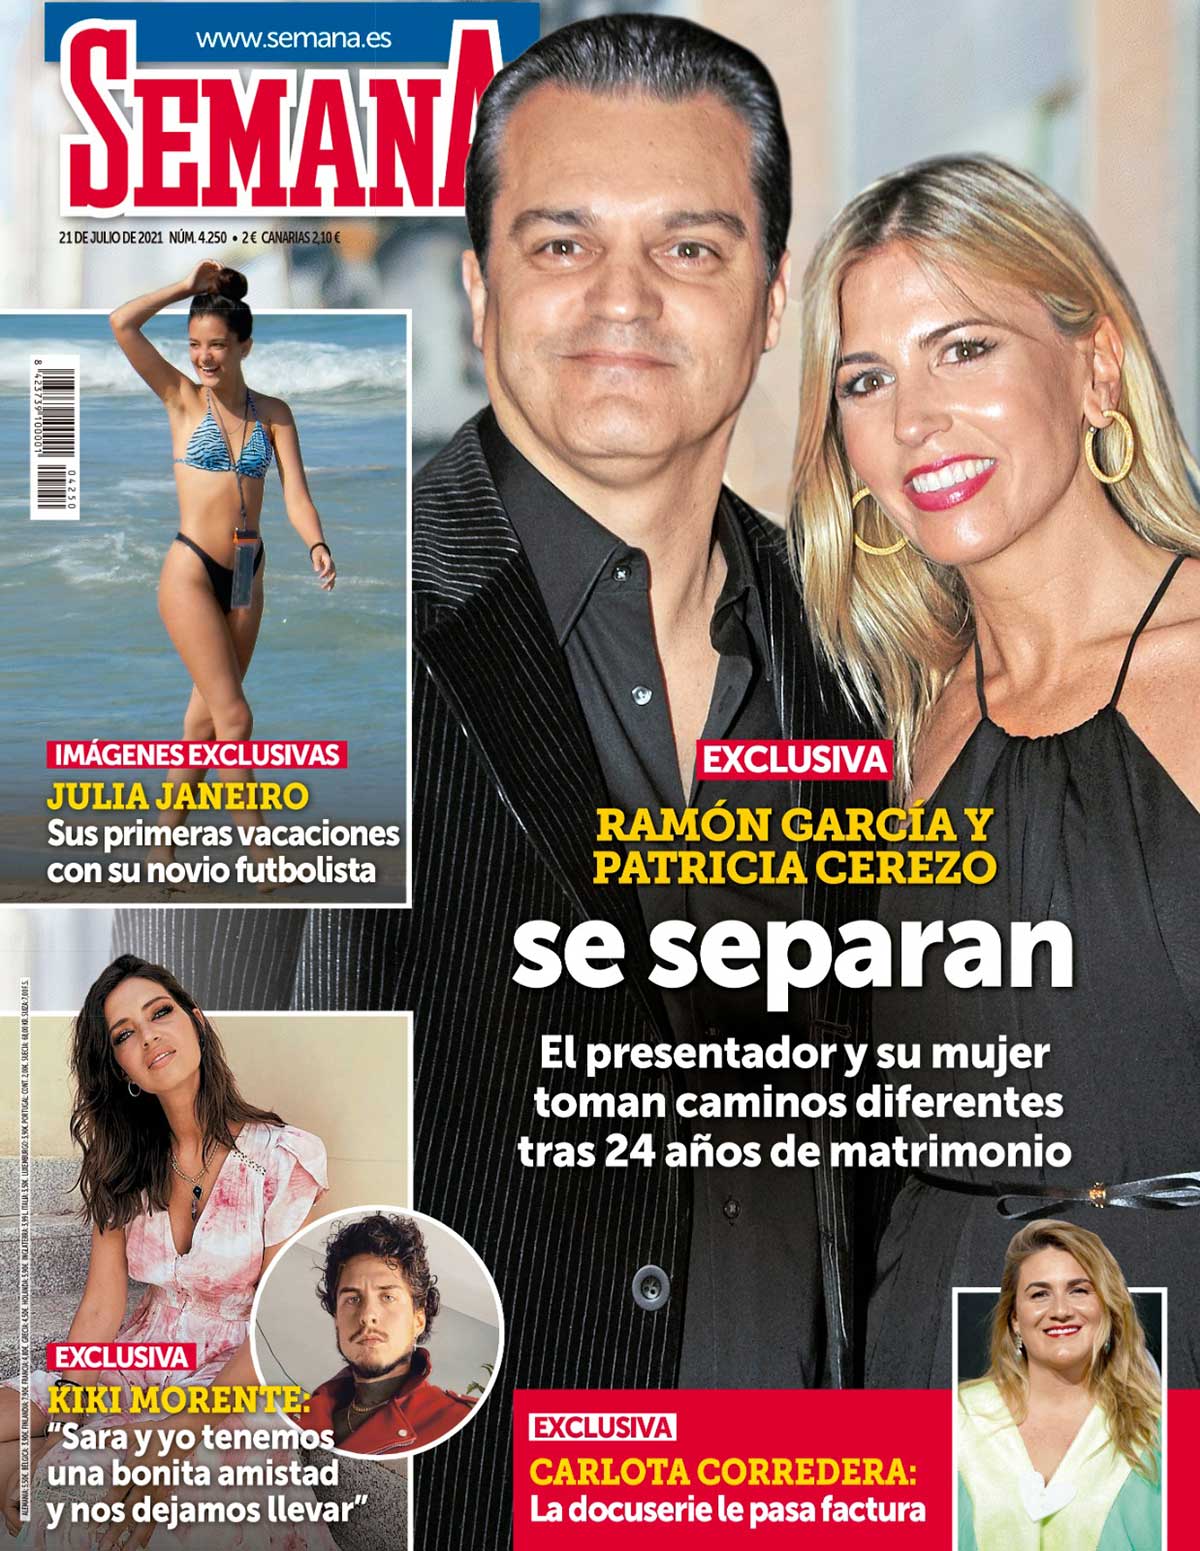 En SEMANA, las fotos exclusivas de las primeras vacaciones de Julia Janeiro con su novio futbolista